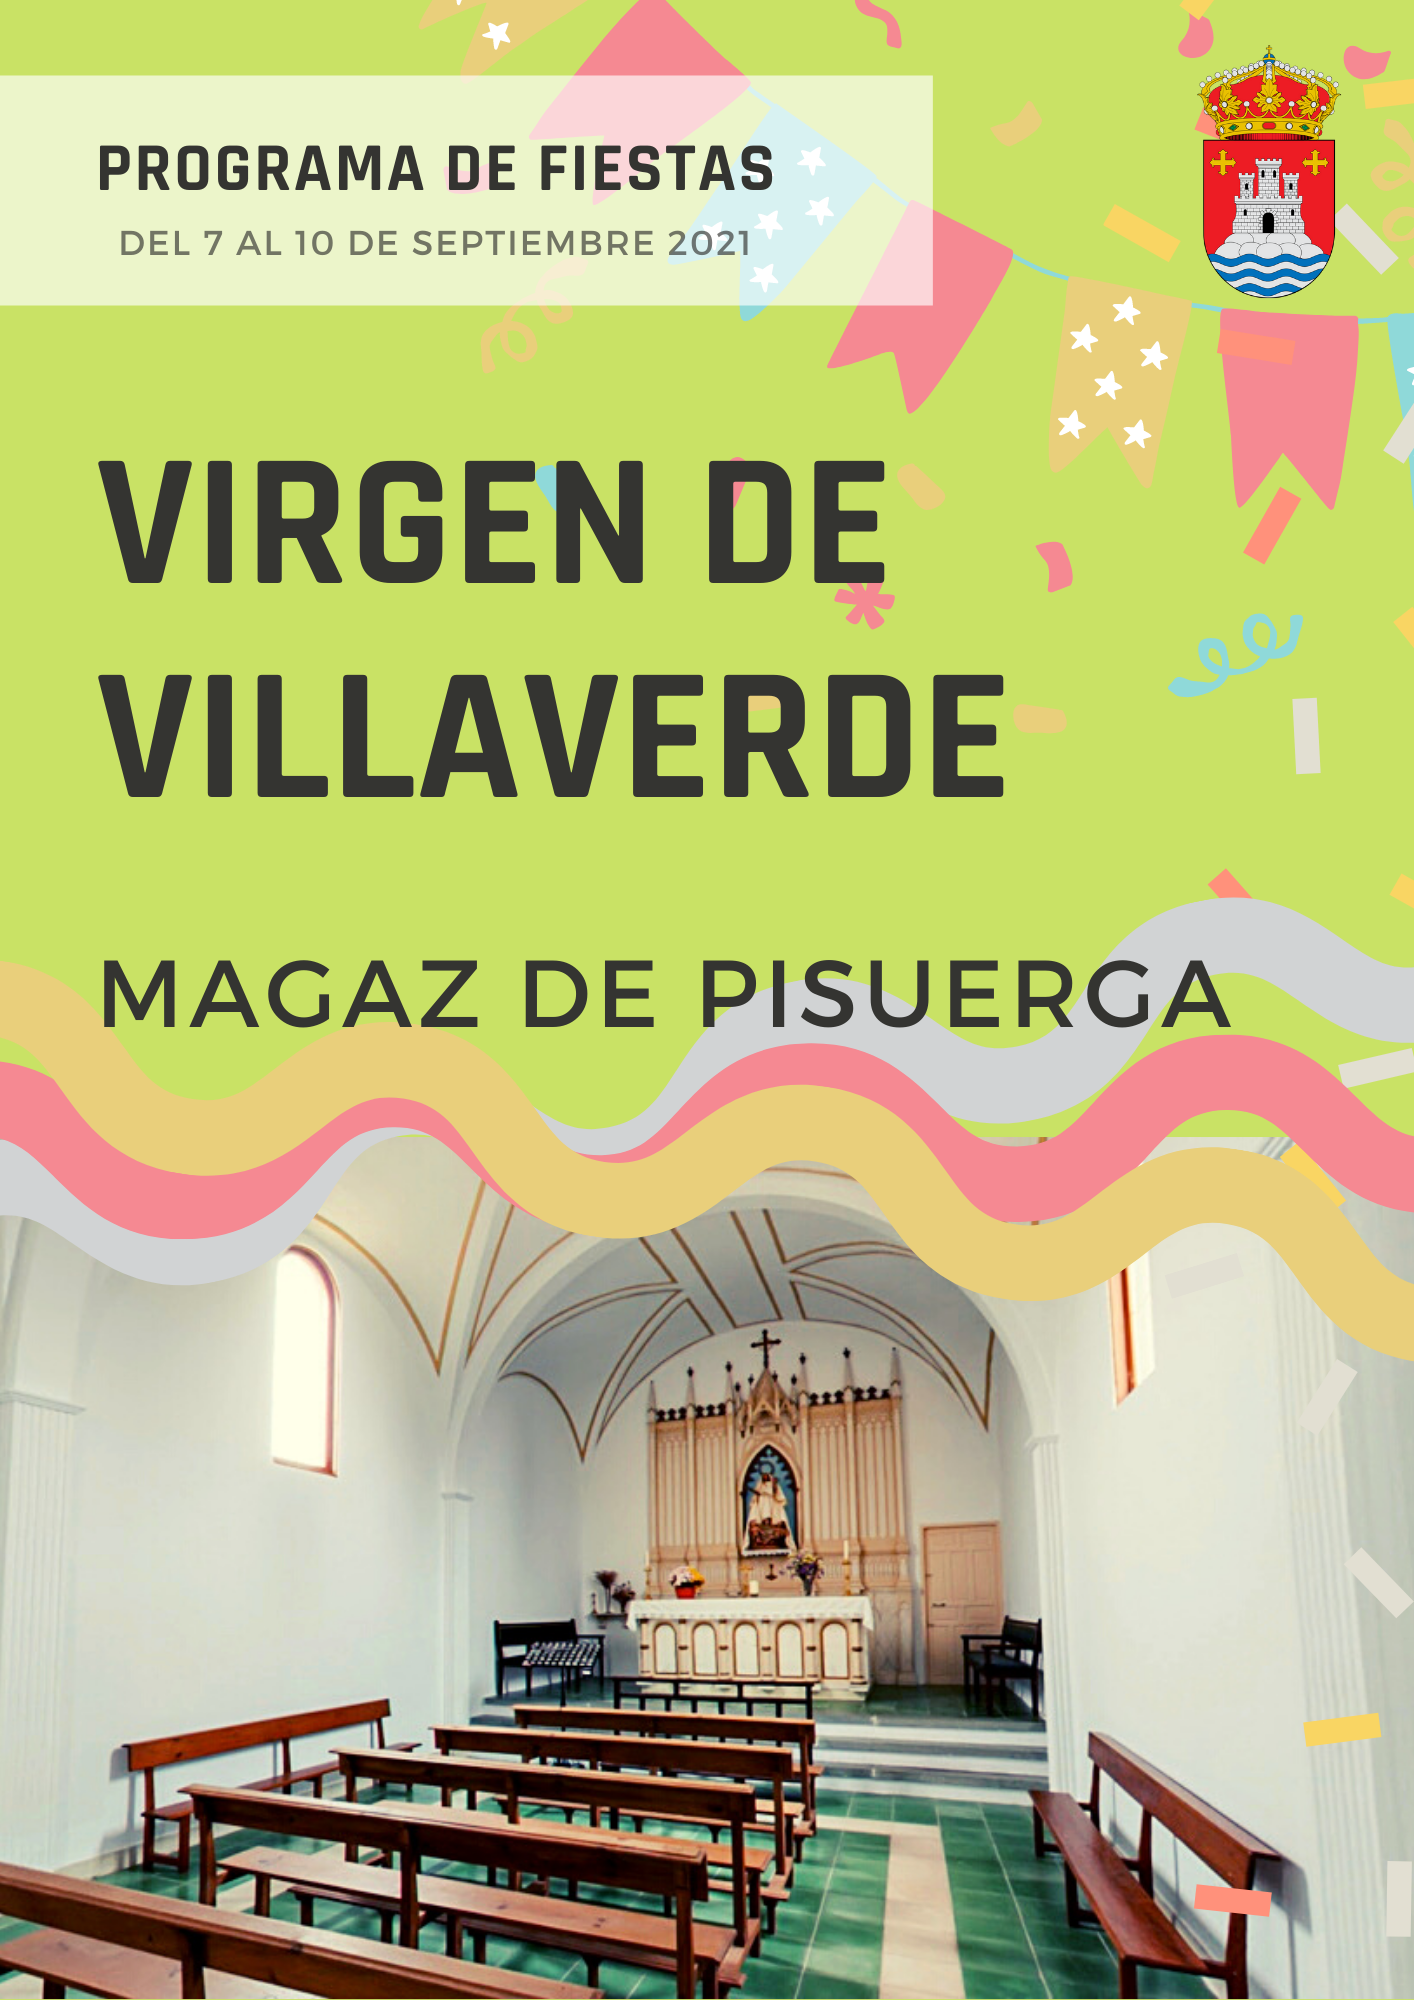 Programa de fiestas Virgen de Villaverde – Del 7 al 10 de septiembre